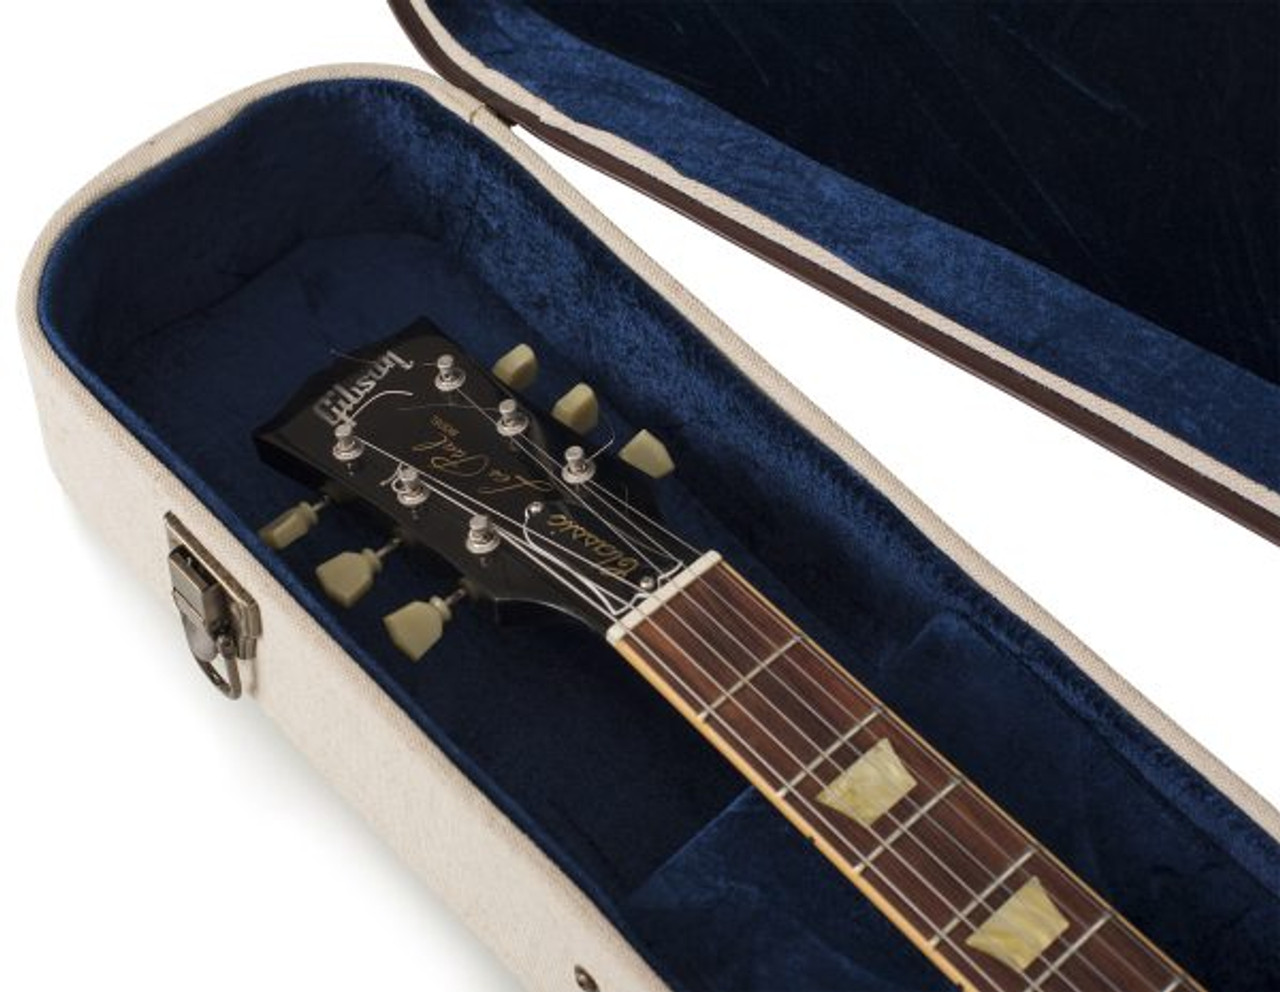 Gator GW-JM LPS Journeyman Les Paul® Deluxe Wood Case